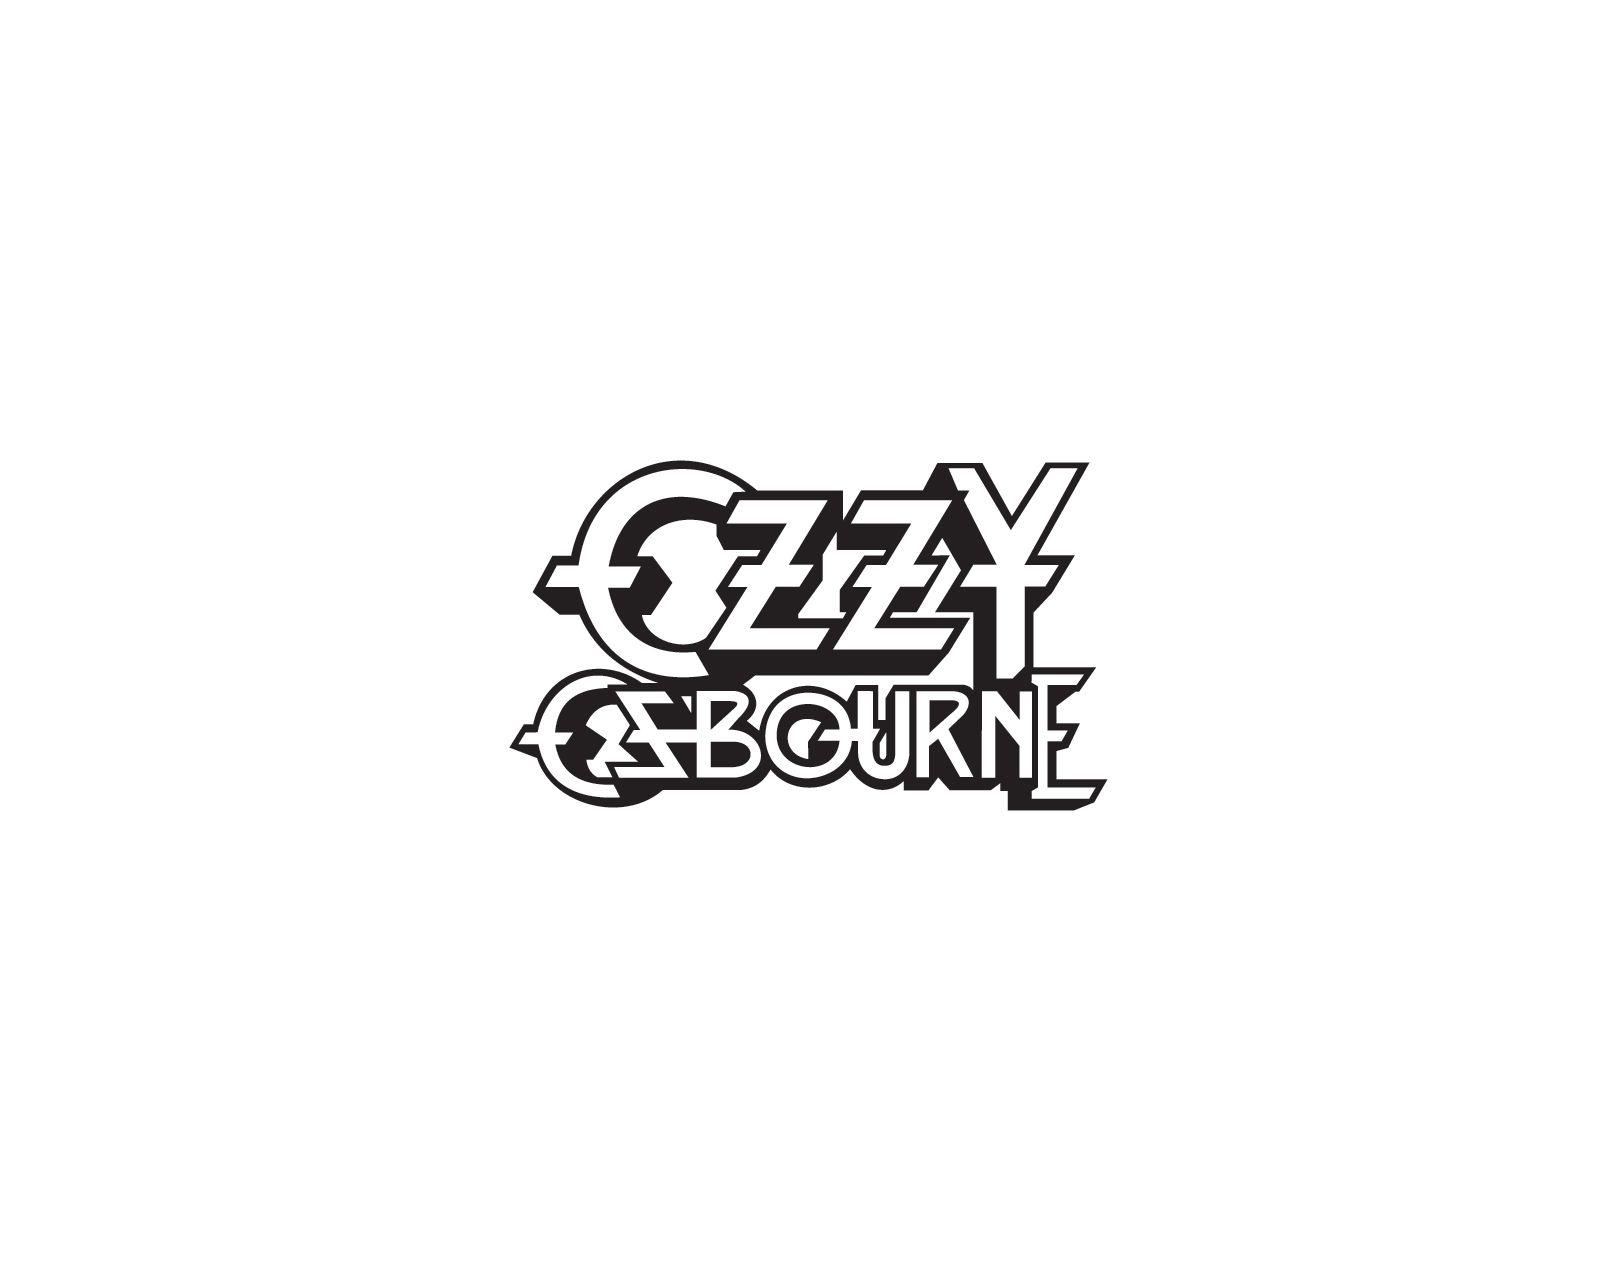 Ozzy Osbourne Band Logo - Ozzy Osbourne logo. Band logos band logos, metal bands logos